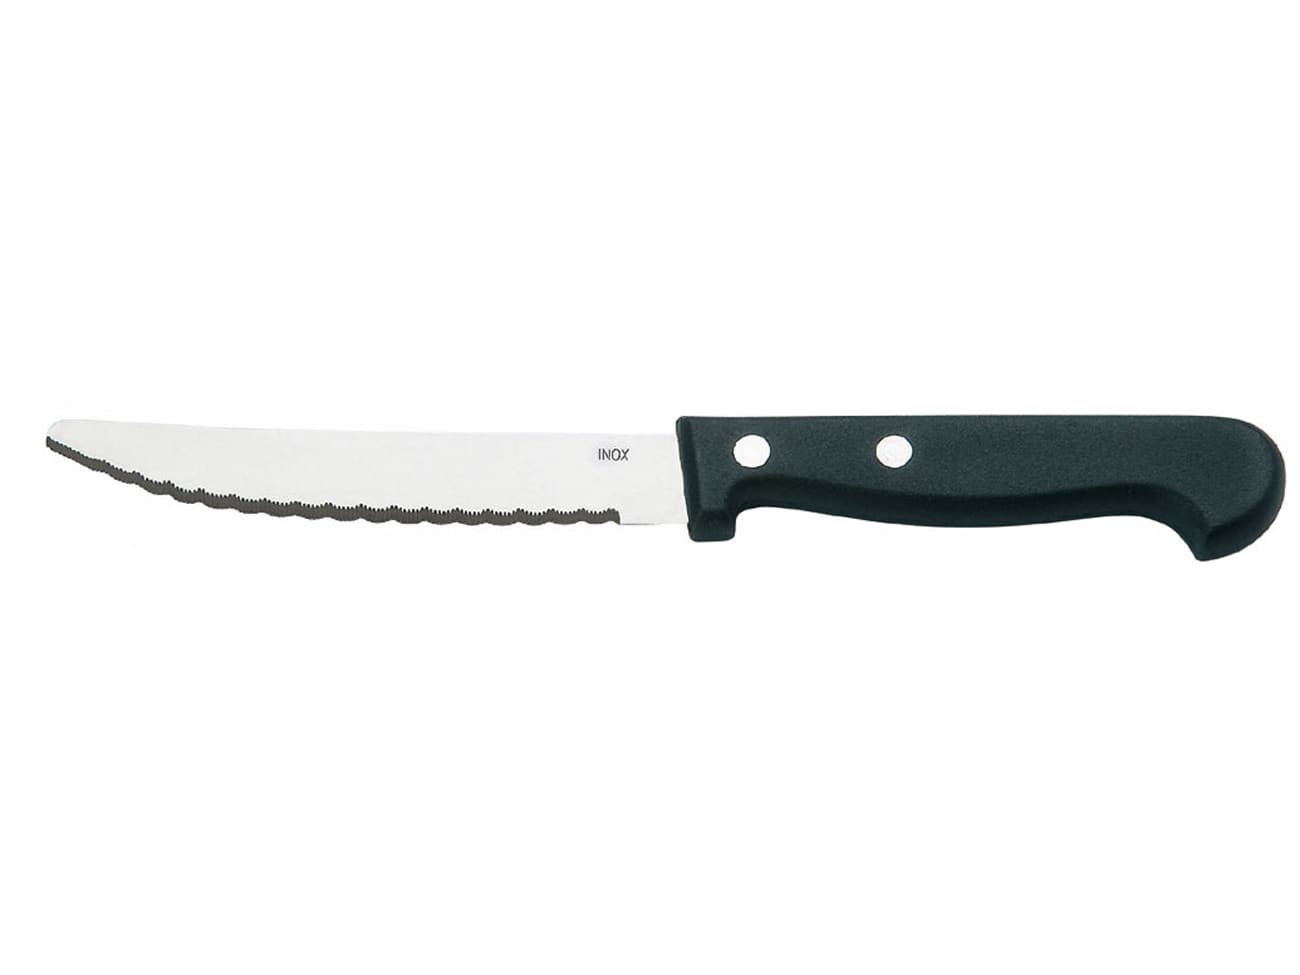 Couteau bout rond - lame 11 cm - Meilleur du Chef